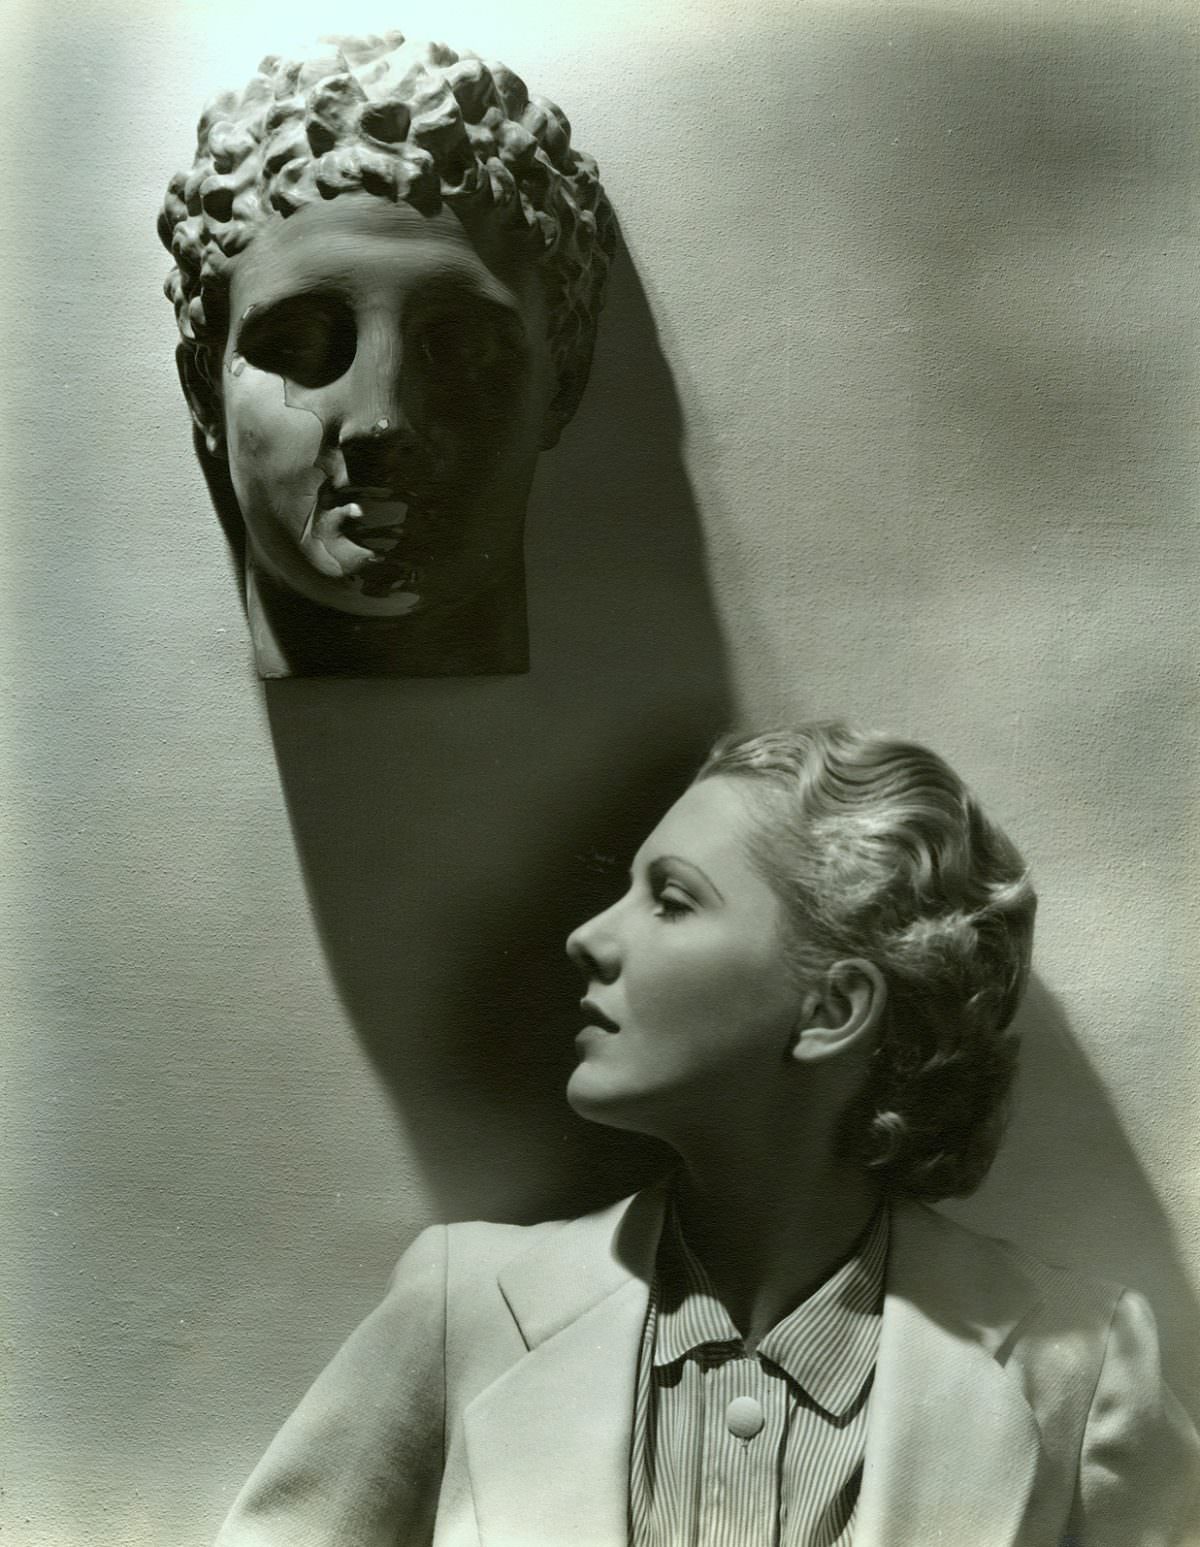 Jean Arthur by Lusha Nelson, 1935